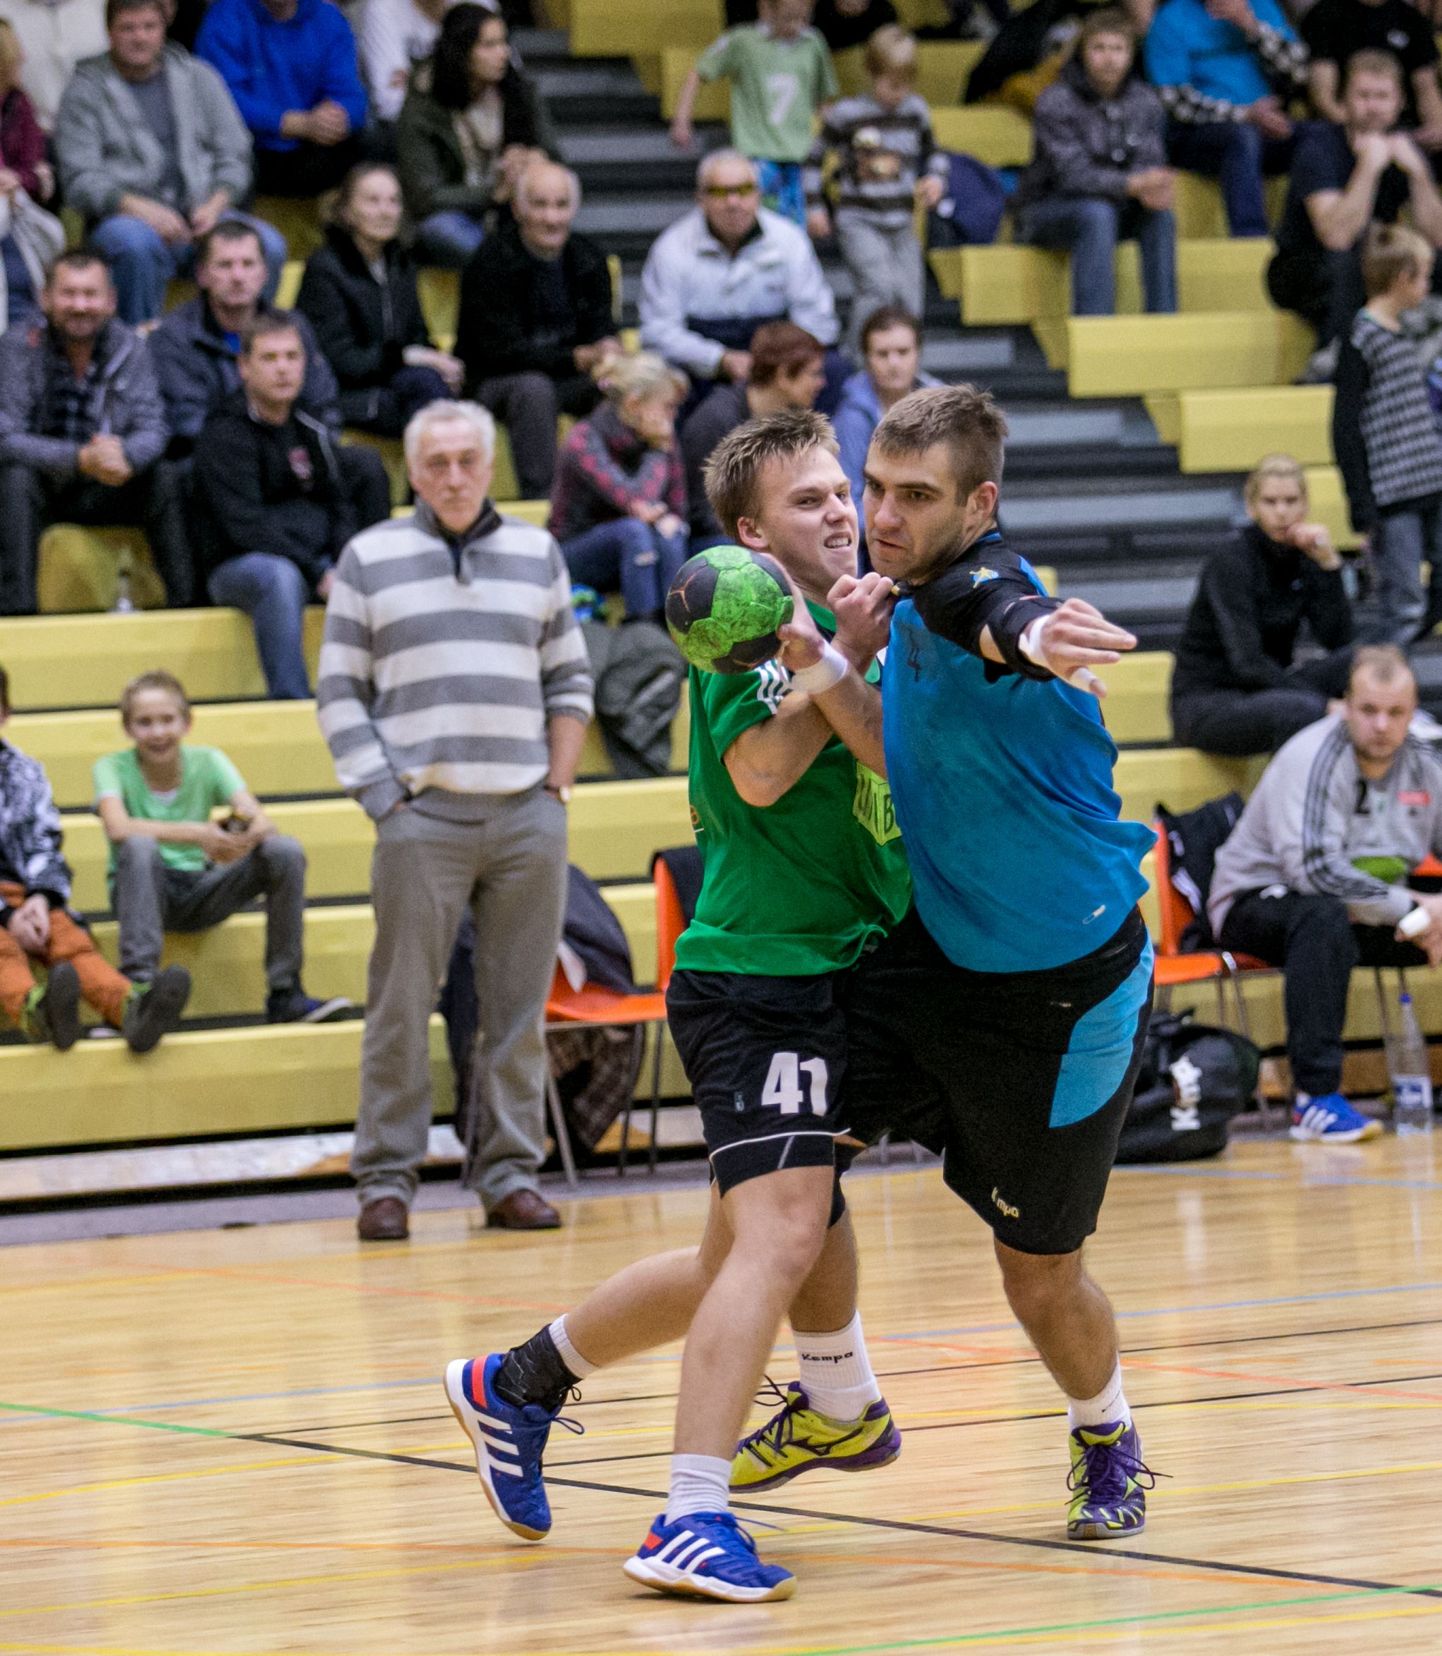 Täna kell 19 kohtuvad Viljandi spordihoones Eesti käsipalli meistriliigas Viljandi HC ja tiitlikaitsja Põlva Serviti.